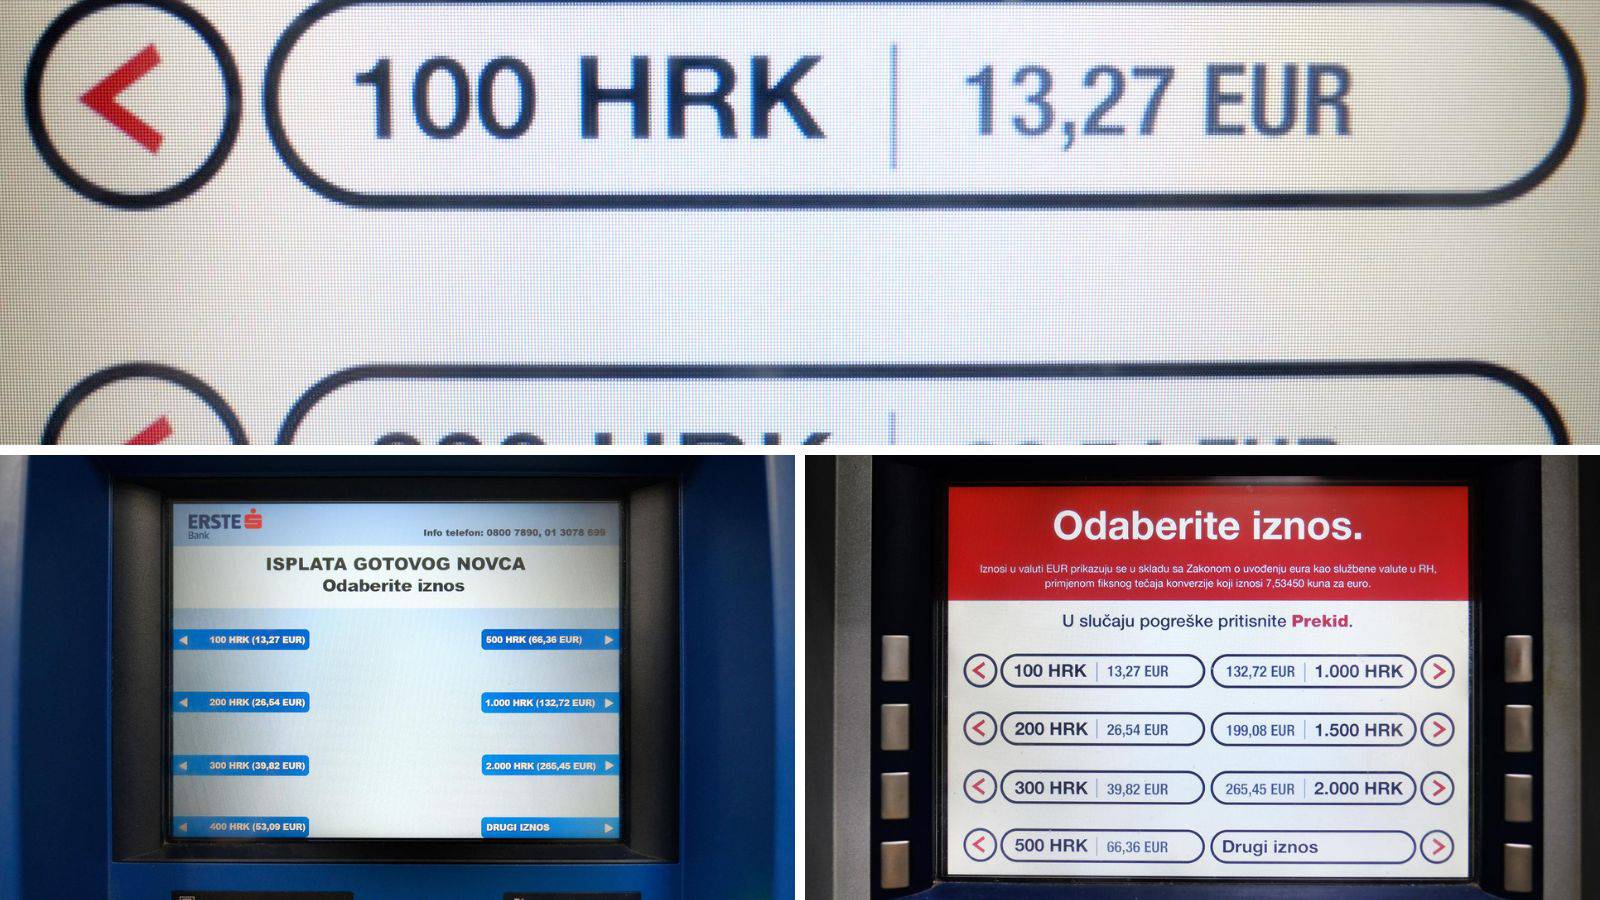 Prilagodba u tijeku: Bankomati sad pokazuju i stanje u eurima